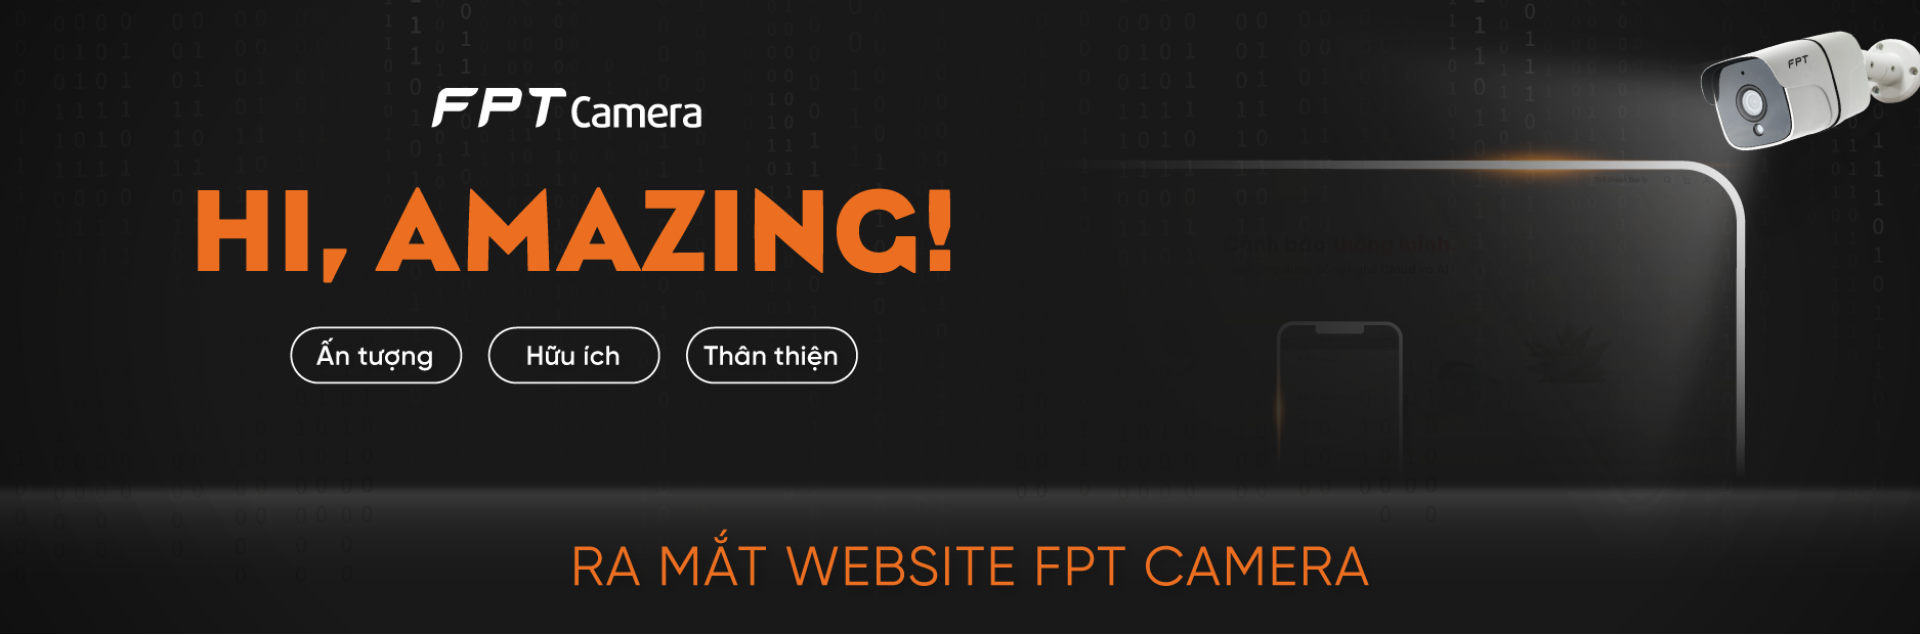 FPT Camera ra mắt website mới